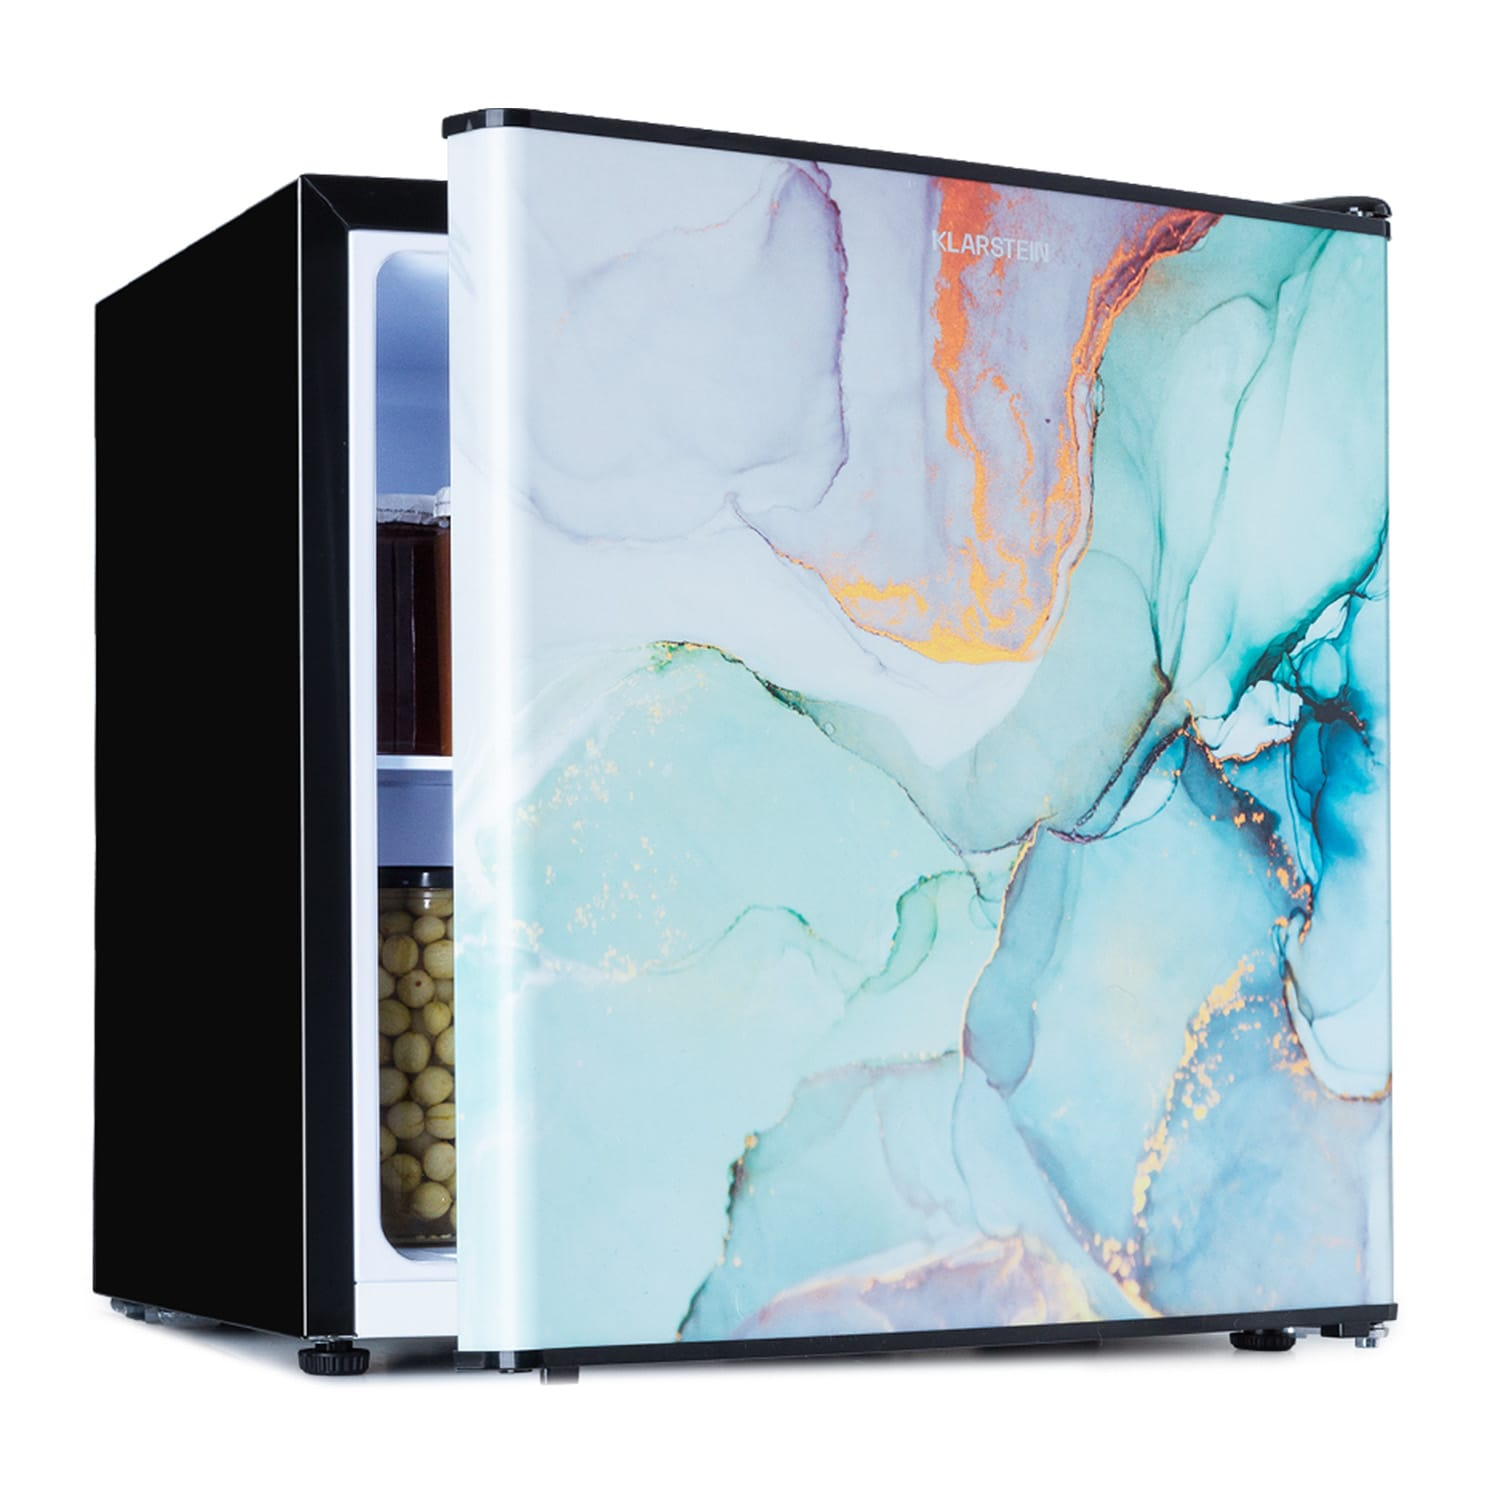 KLARSTEIN CoolArt 45L Mini-Kühlschrank Multicolor) hoch, 44,5 (F, cm